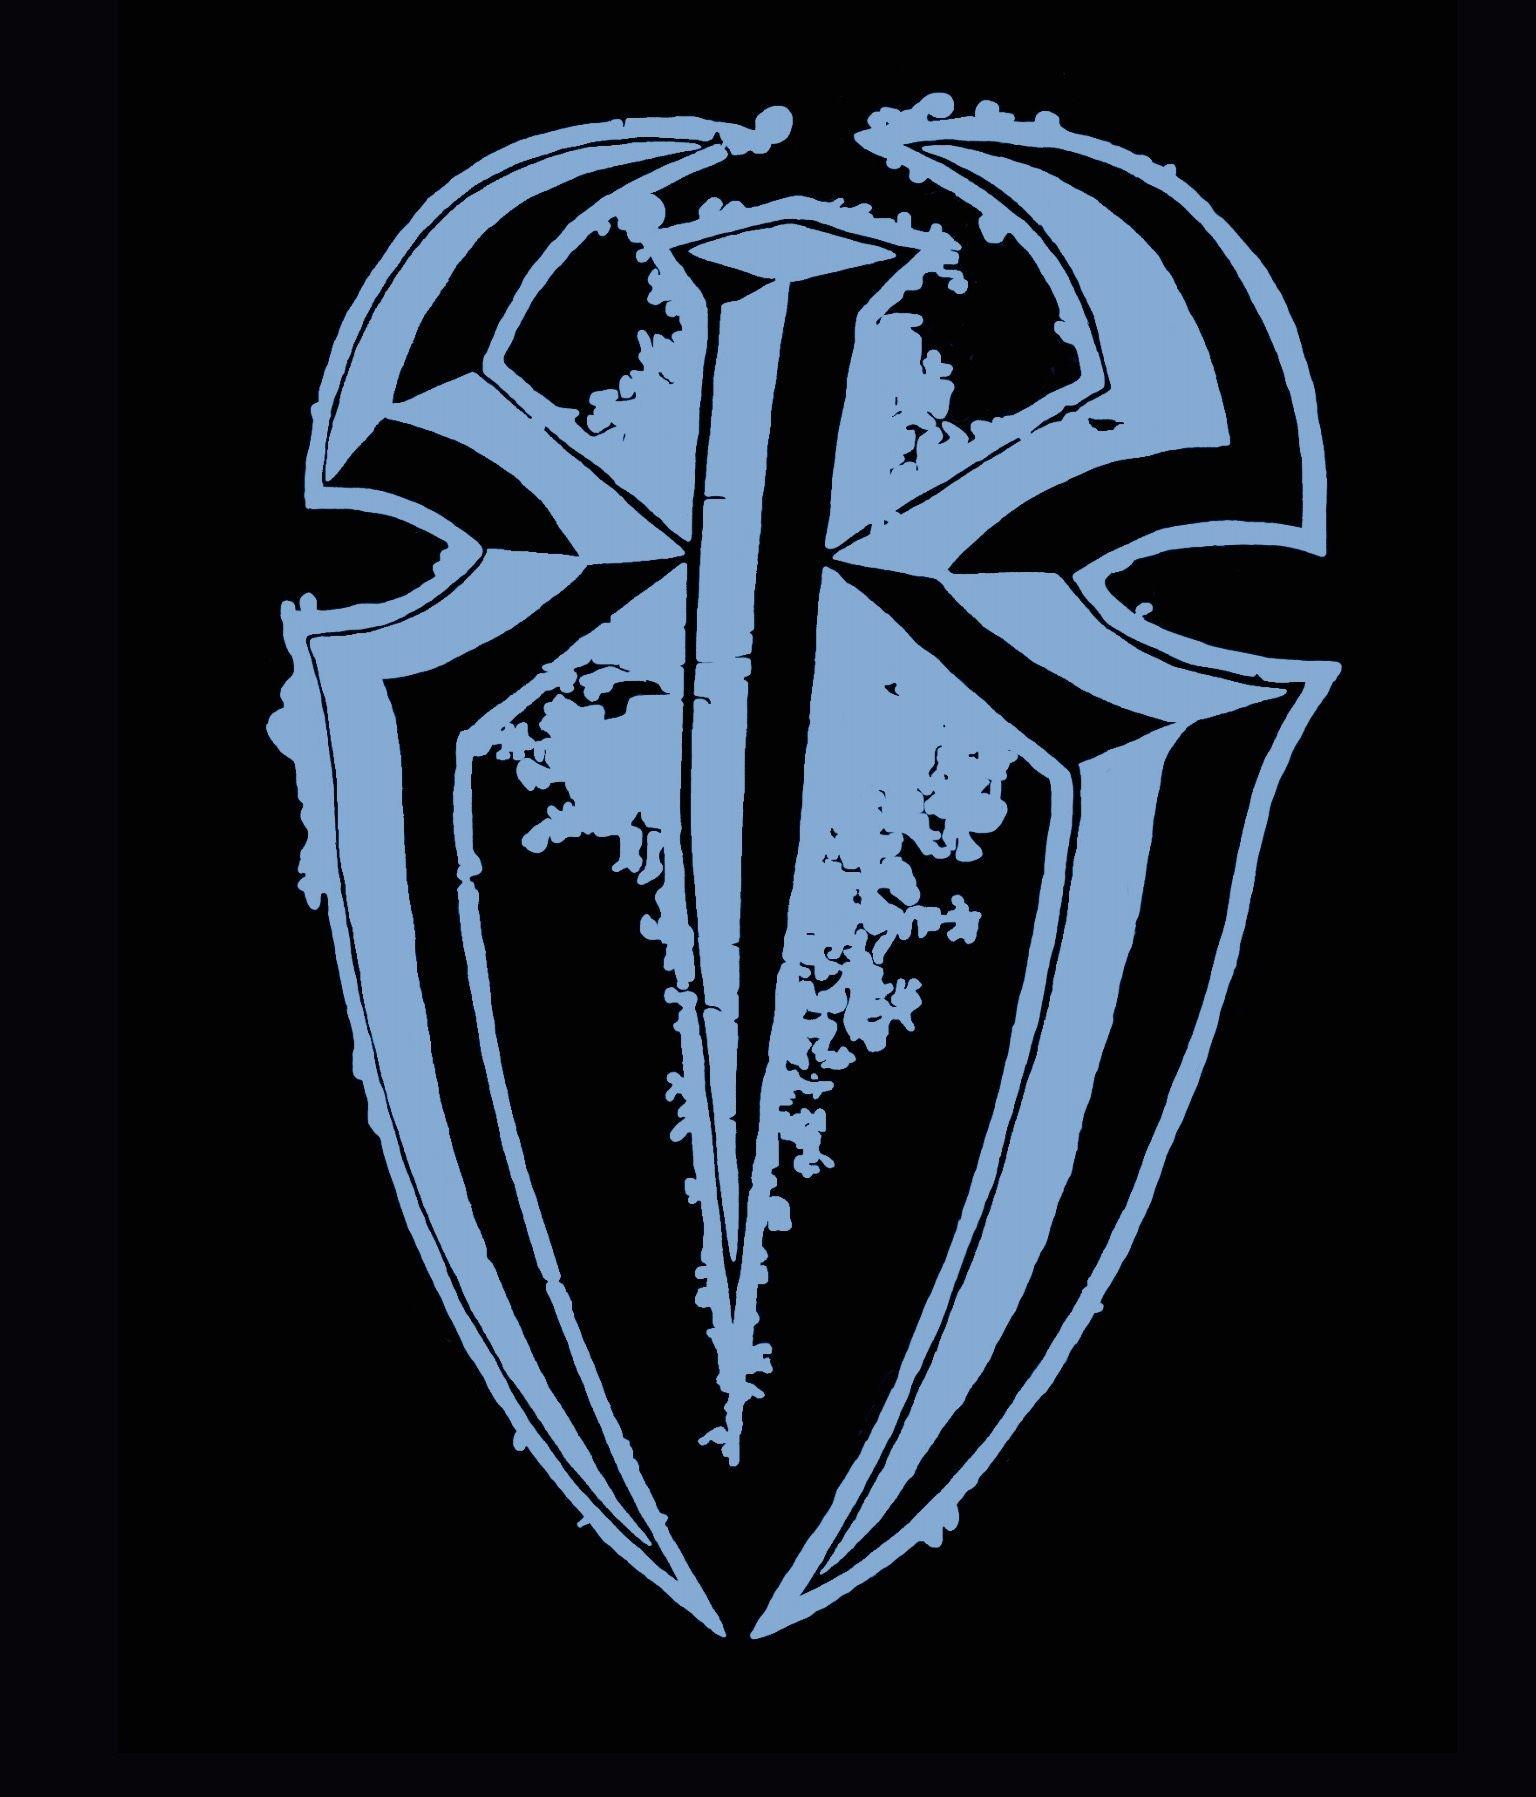 Roman Reigns Logo - Roman reigns Logos